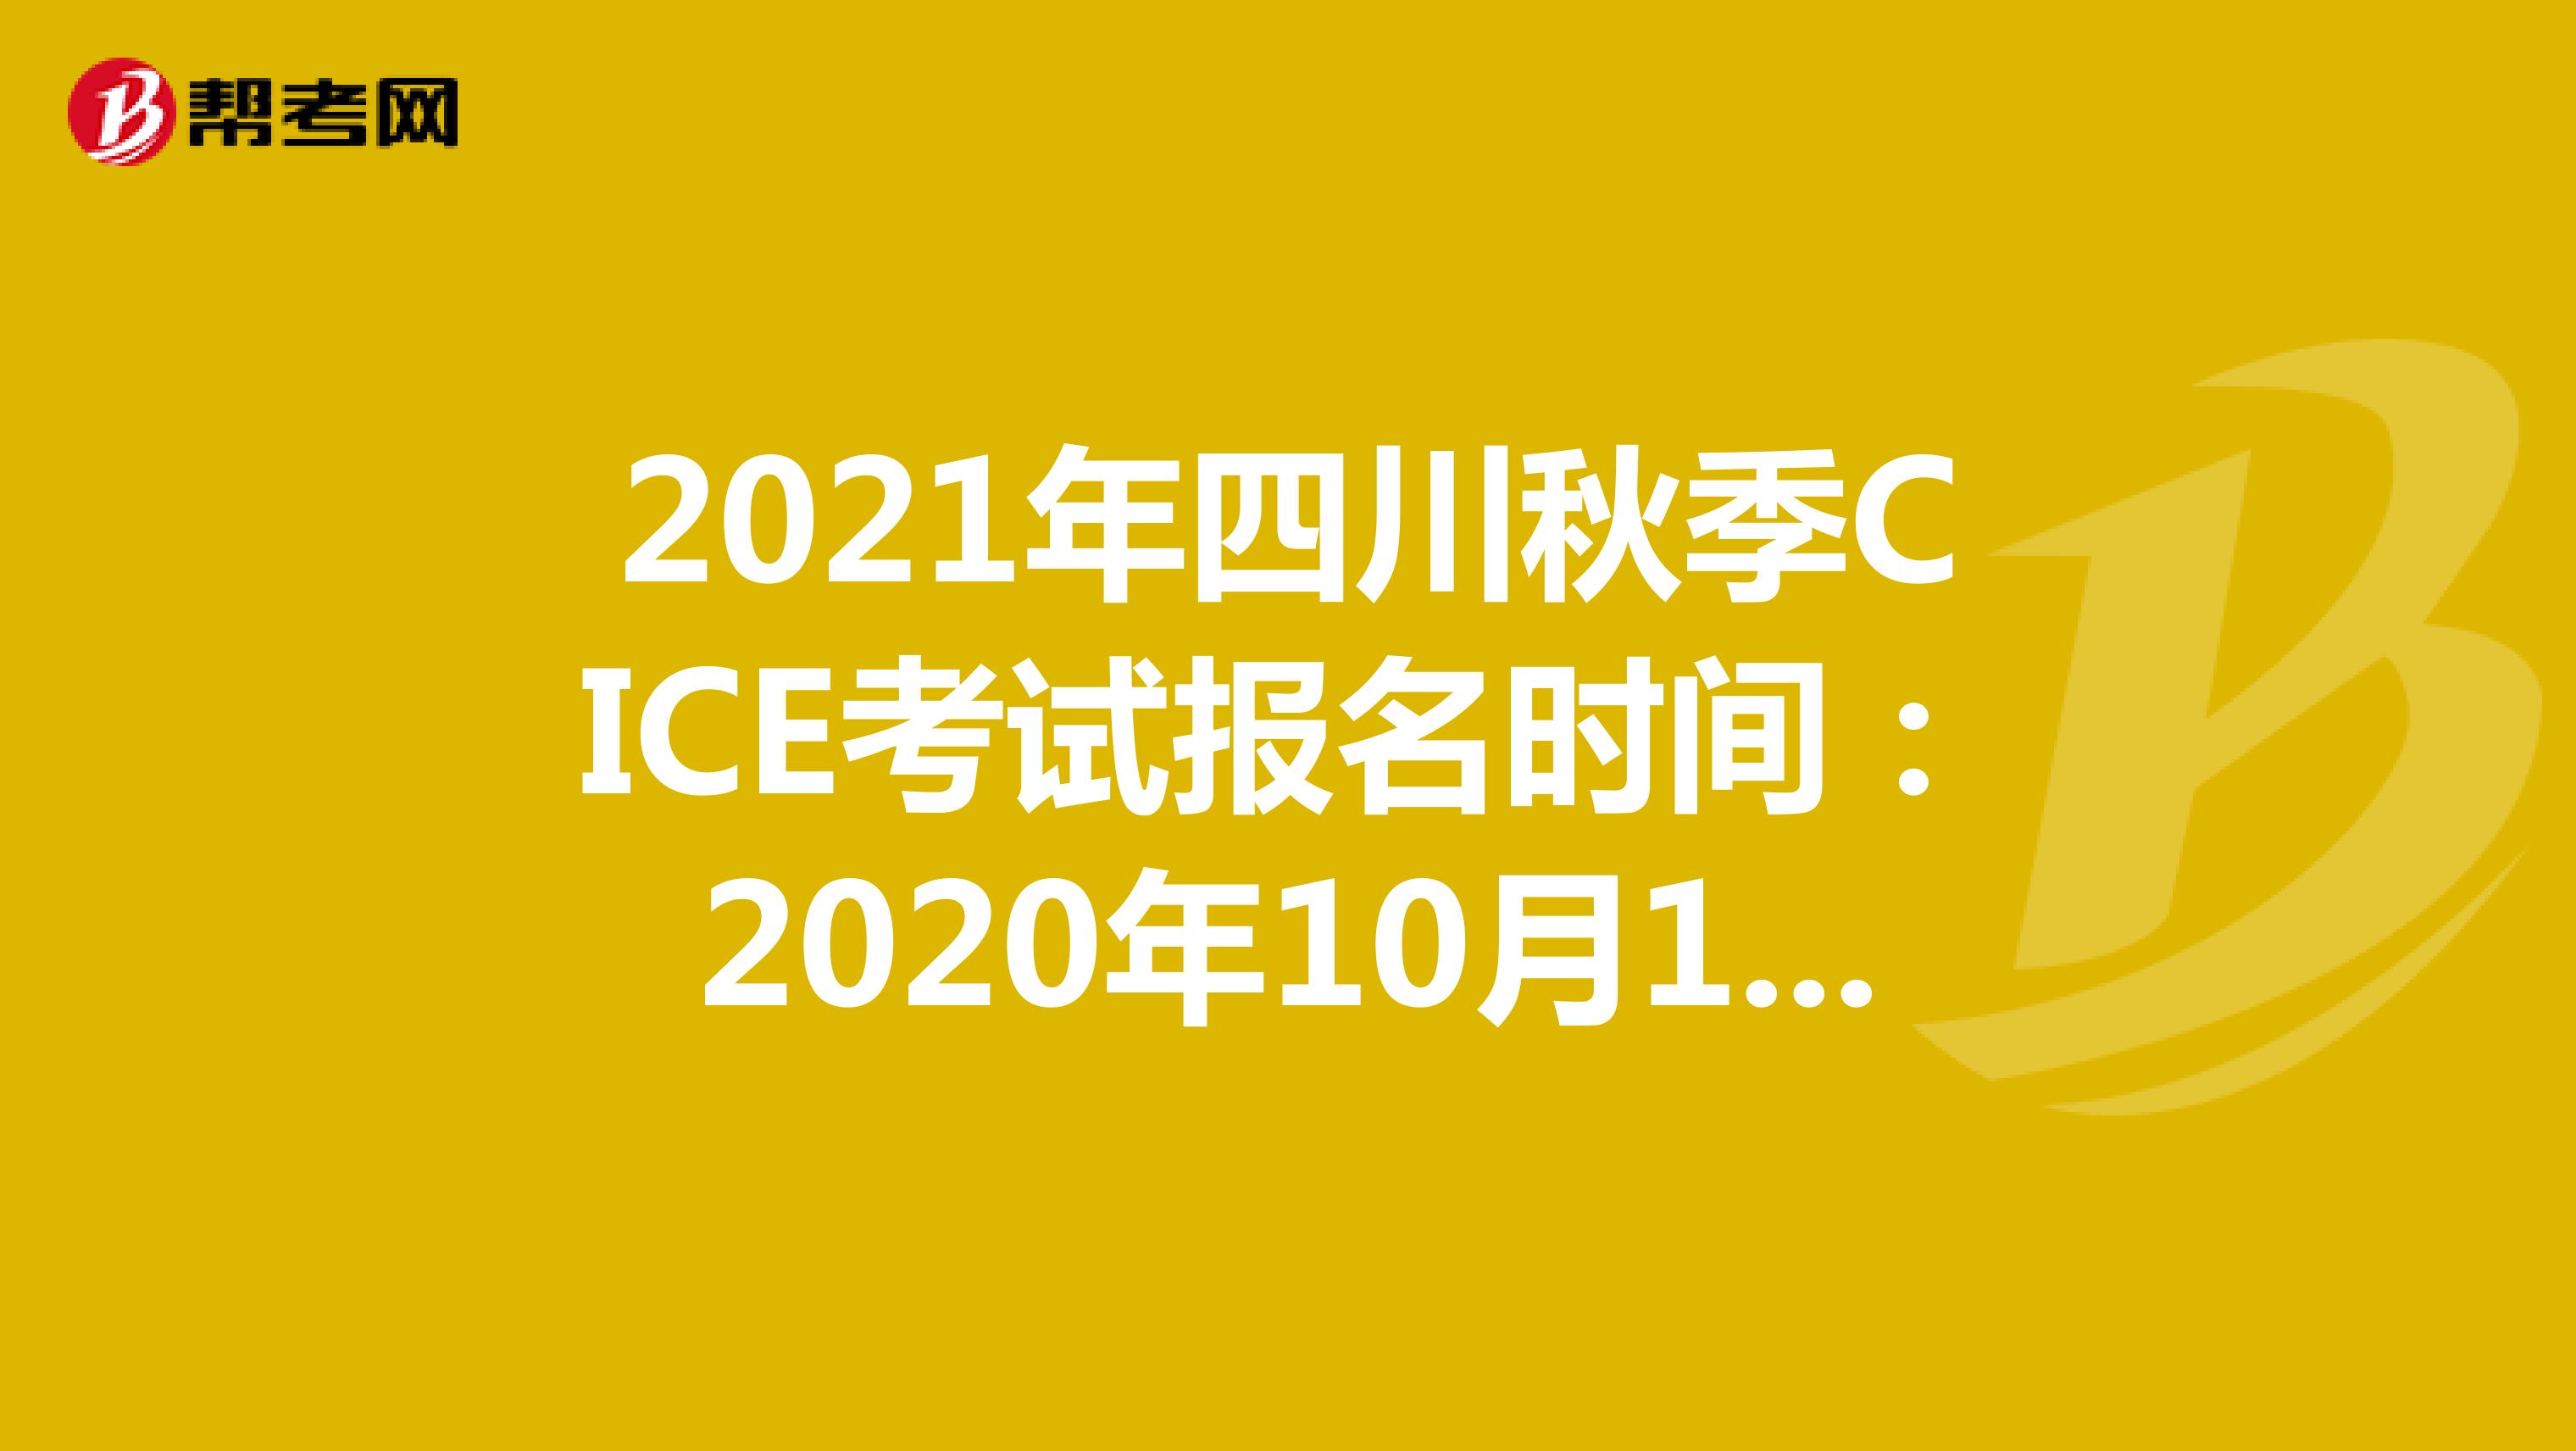 2021年四川秋季CICE考试报名时间：2020年10月19日-2021年8月31日